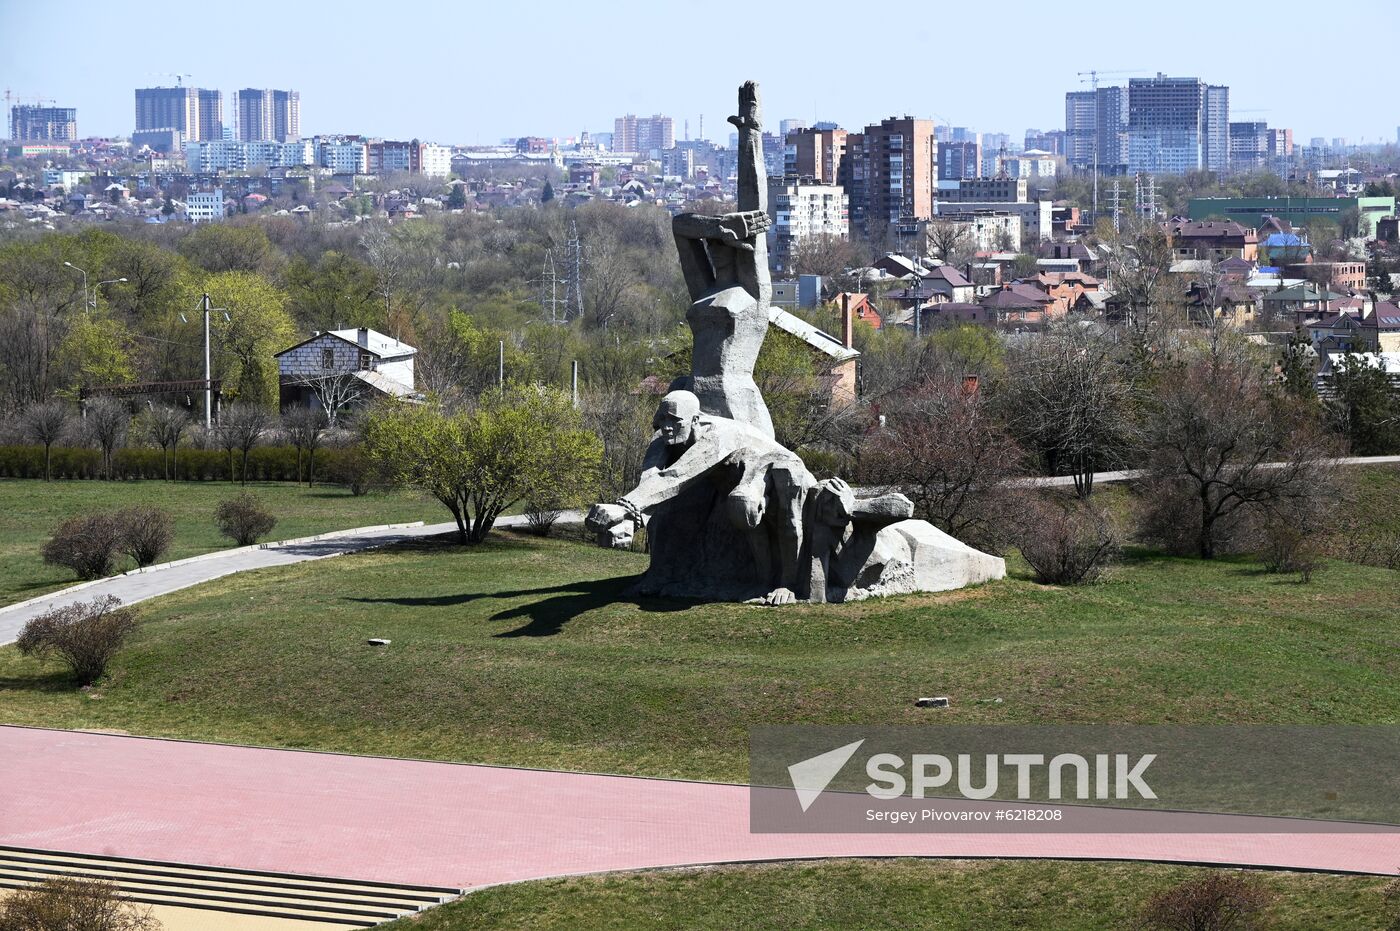 Zmievskaya Balka memorial to Nazi victims in Rostov-on-Don